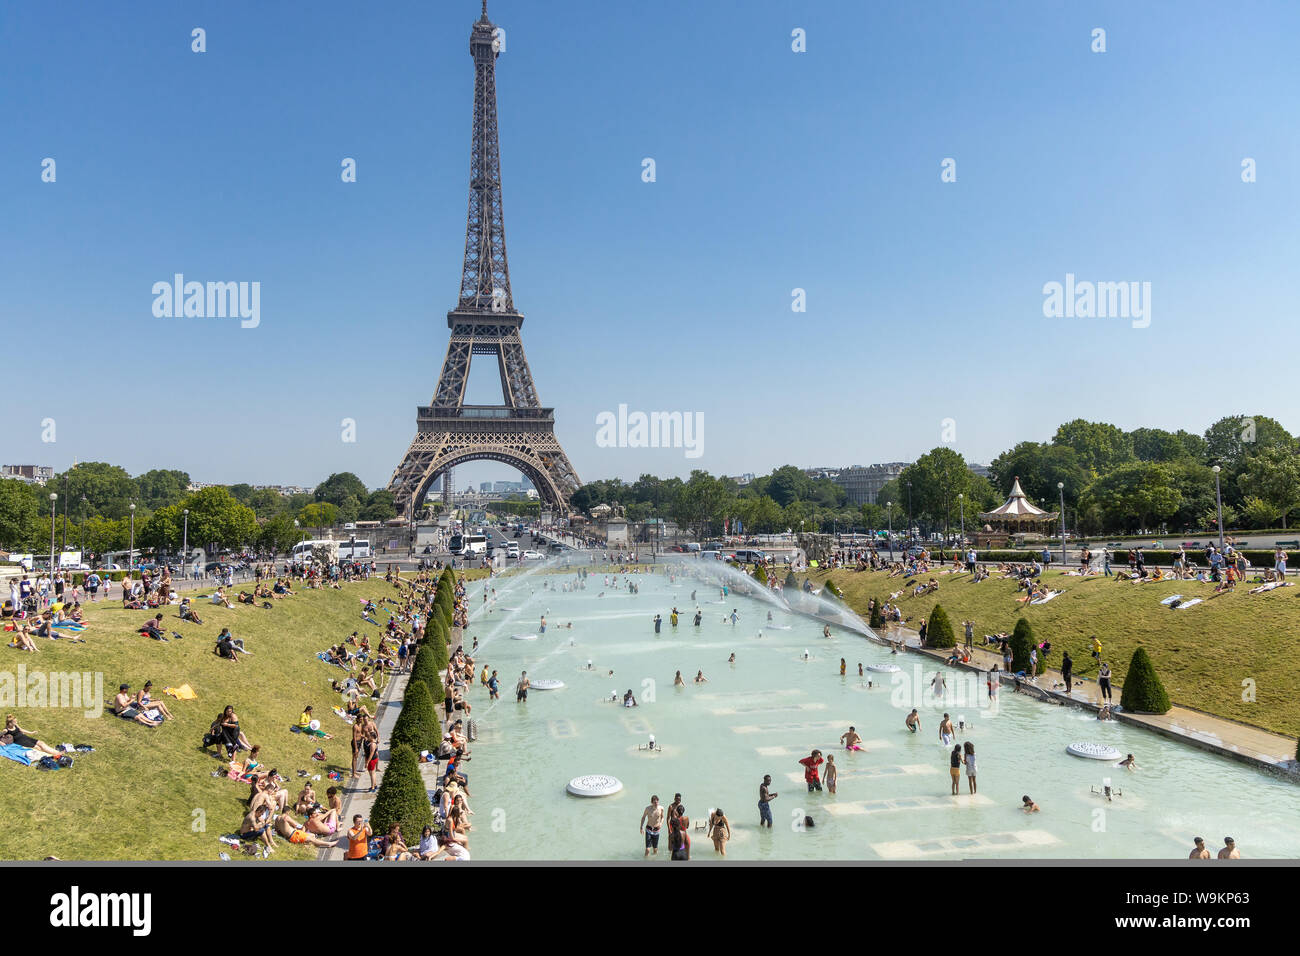 Paris, France, le 27 juin 2019 : les touristes et les habitants de prendre un bain dans les jardins du Trocad ro Gardiens du Trocadéro sous l'eau puissant Banque D'Images